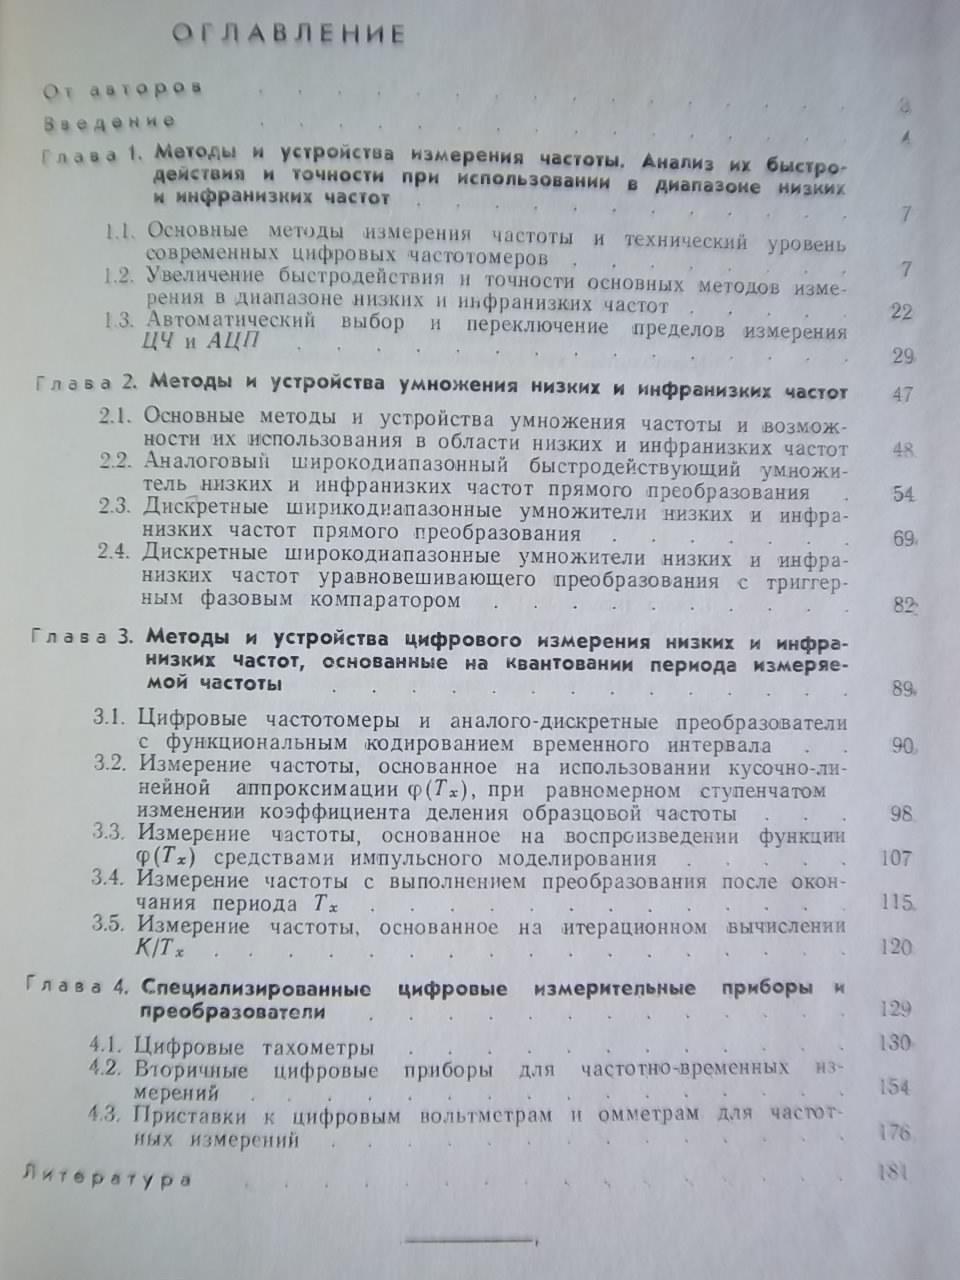 Кирианаки Н., Дудыкевич В.	Методы и устройства цифрового измерения низких и 1